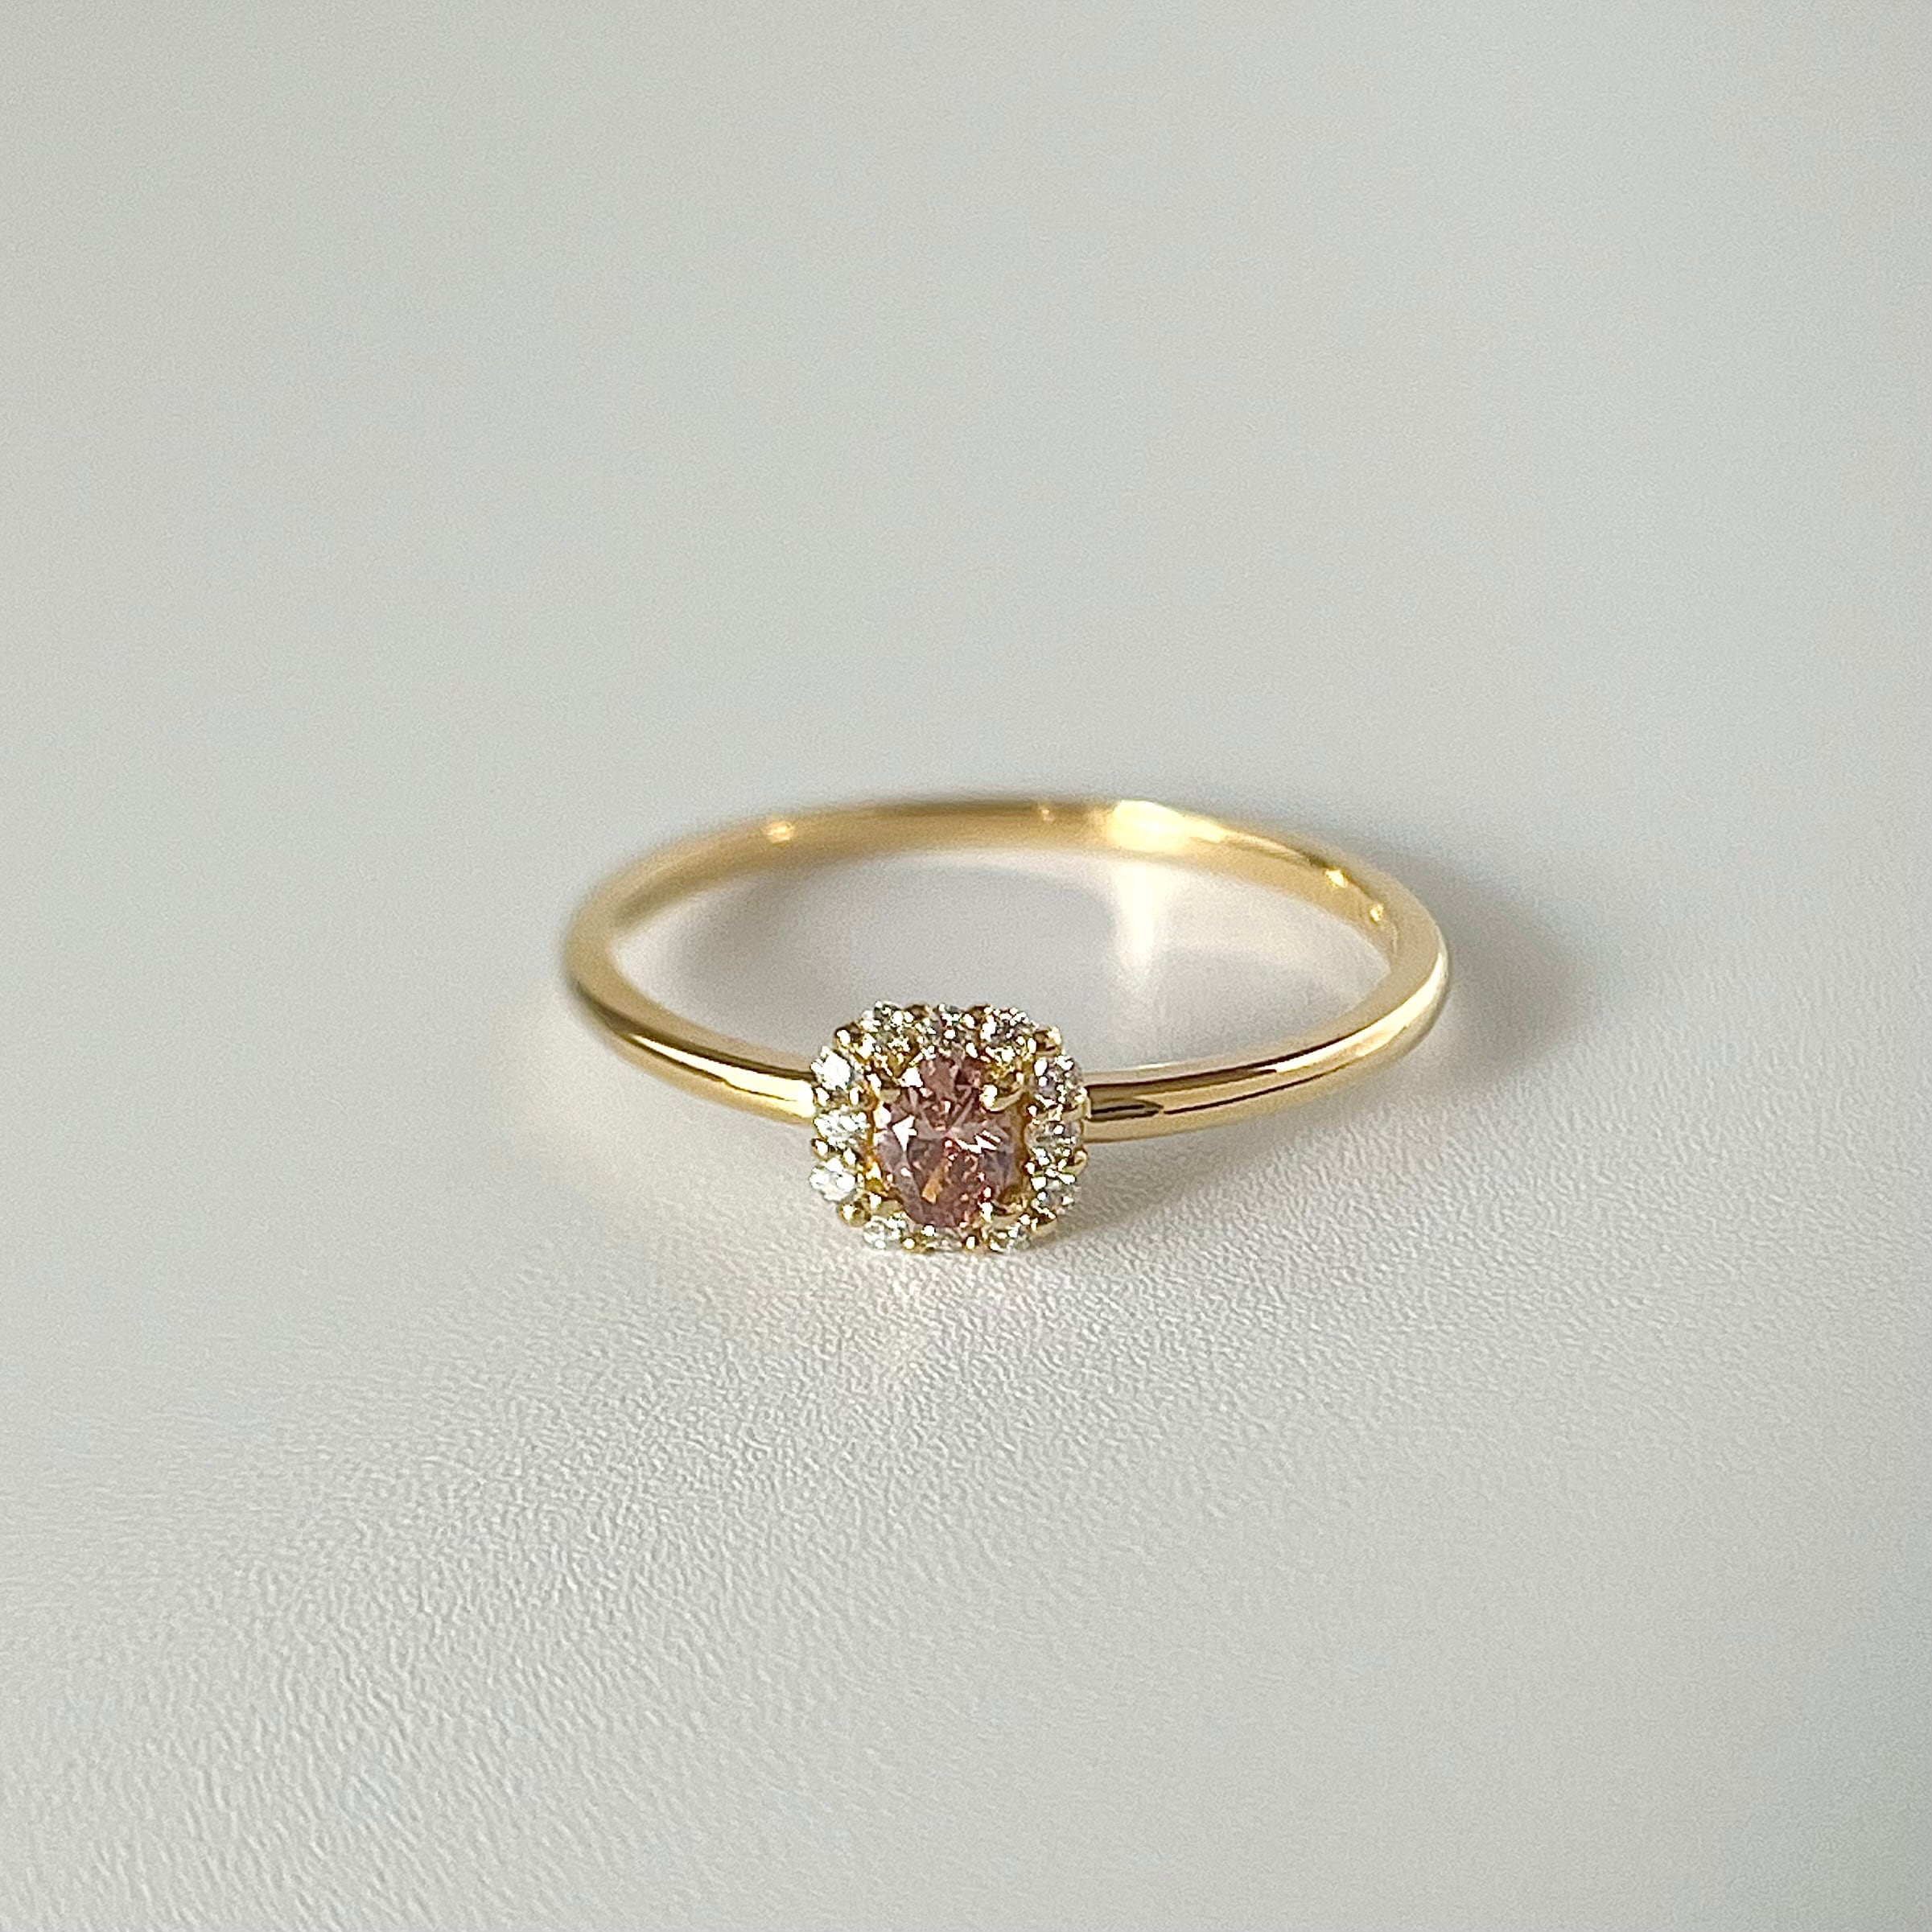 ナチュラル(天然)ピンク  ダイヤモンド 0.06 リング・指輪